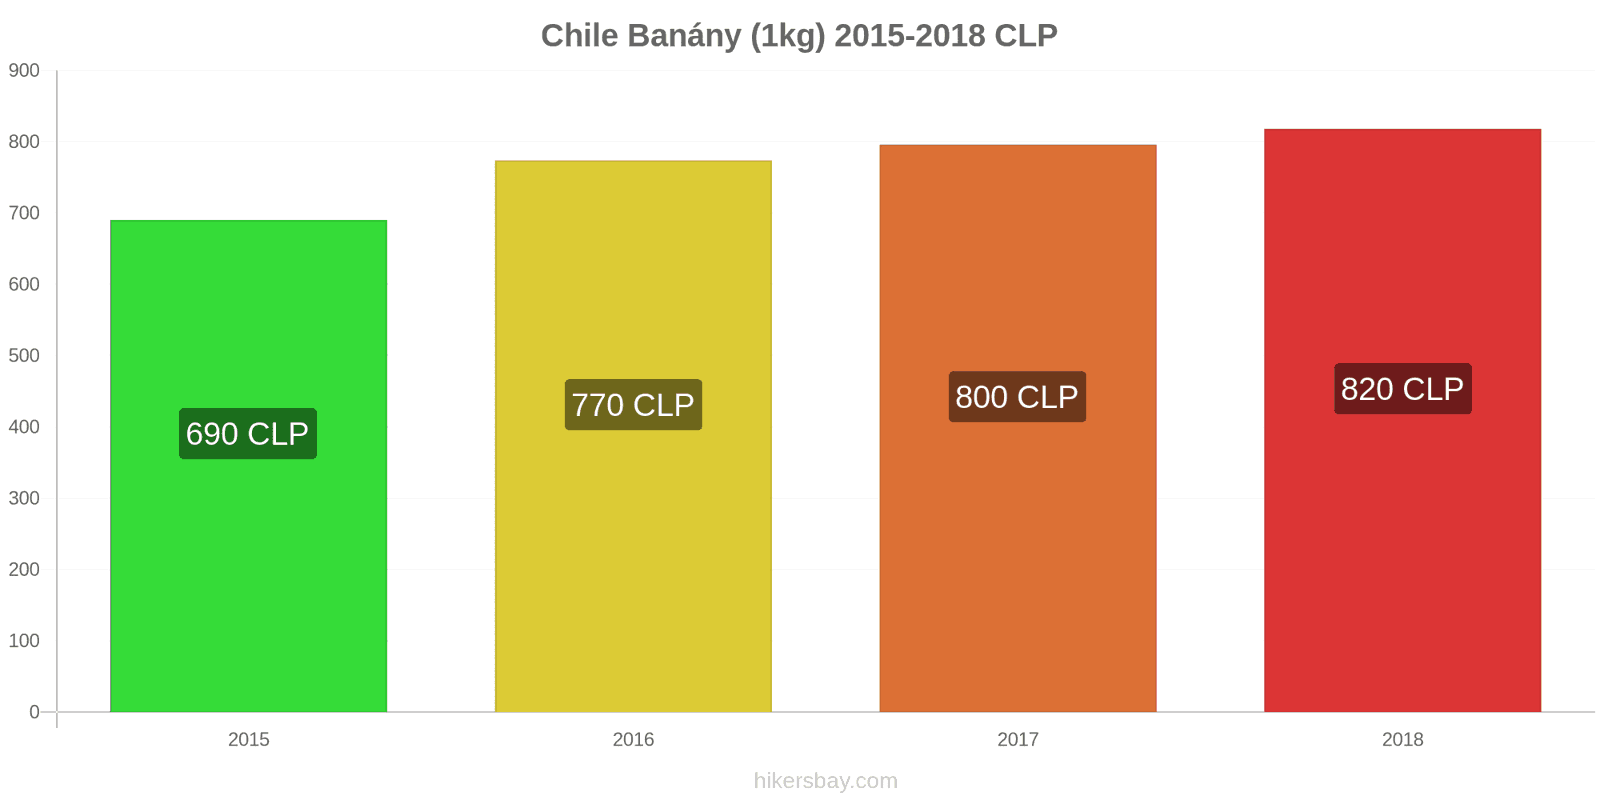 Chile změny cen Banány (1kg) hikersbay.com